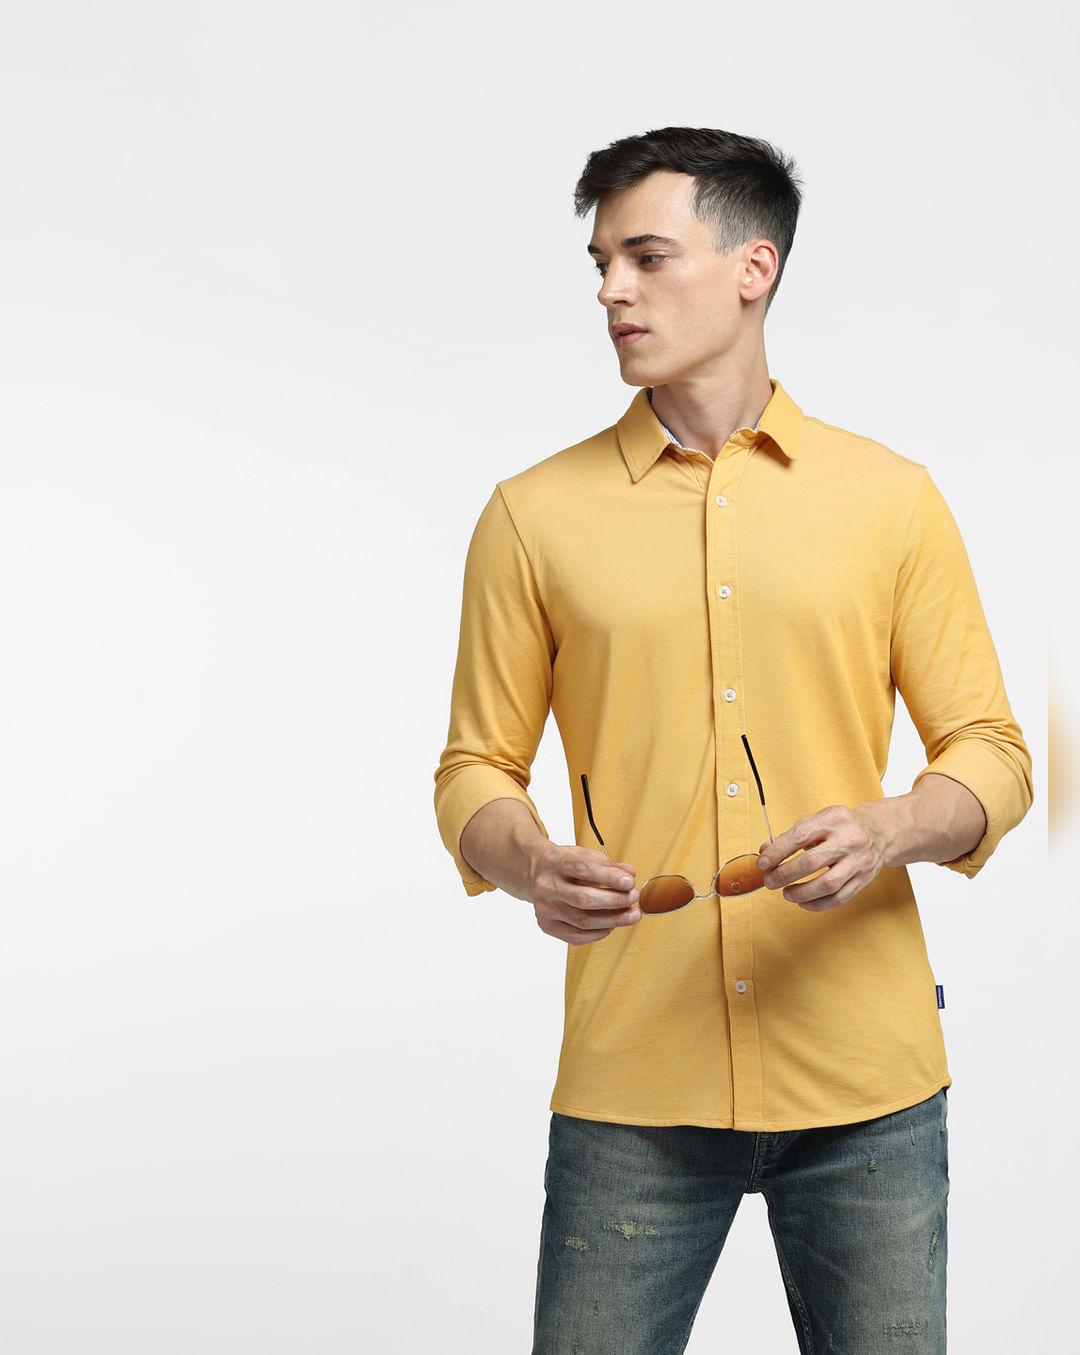 yellow full sleeves shirt